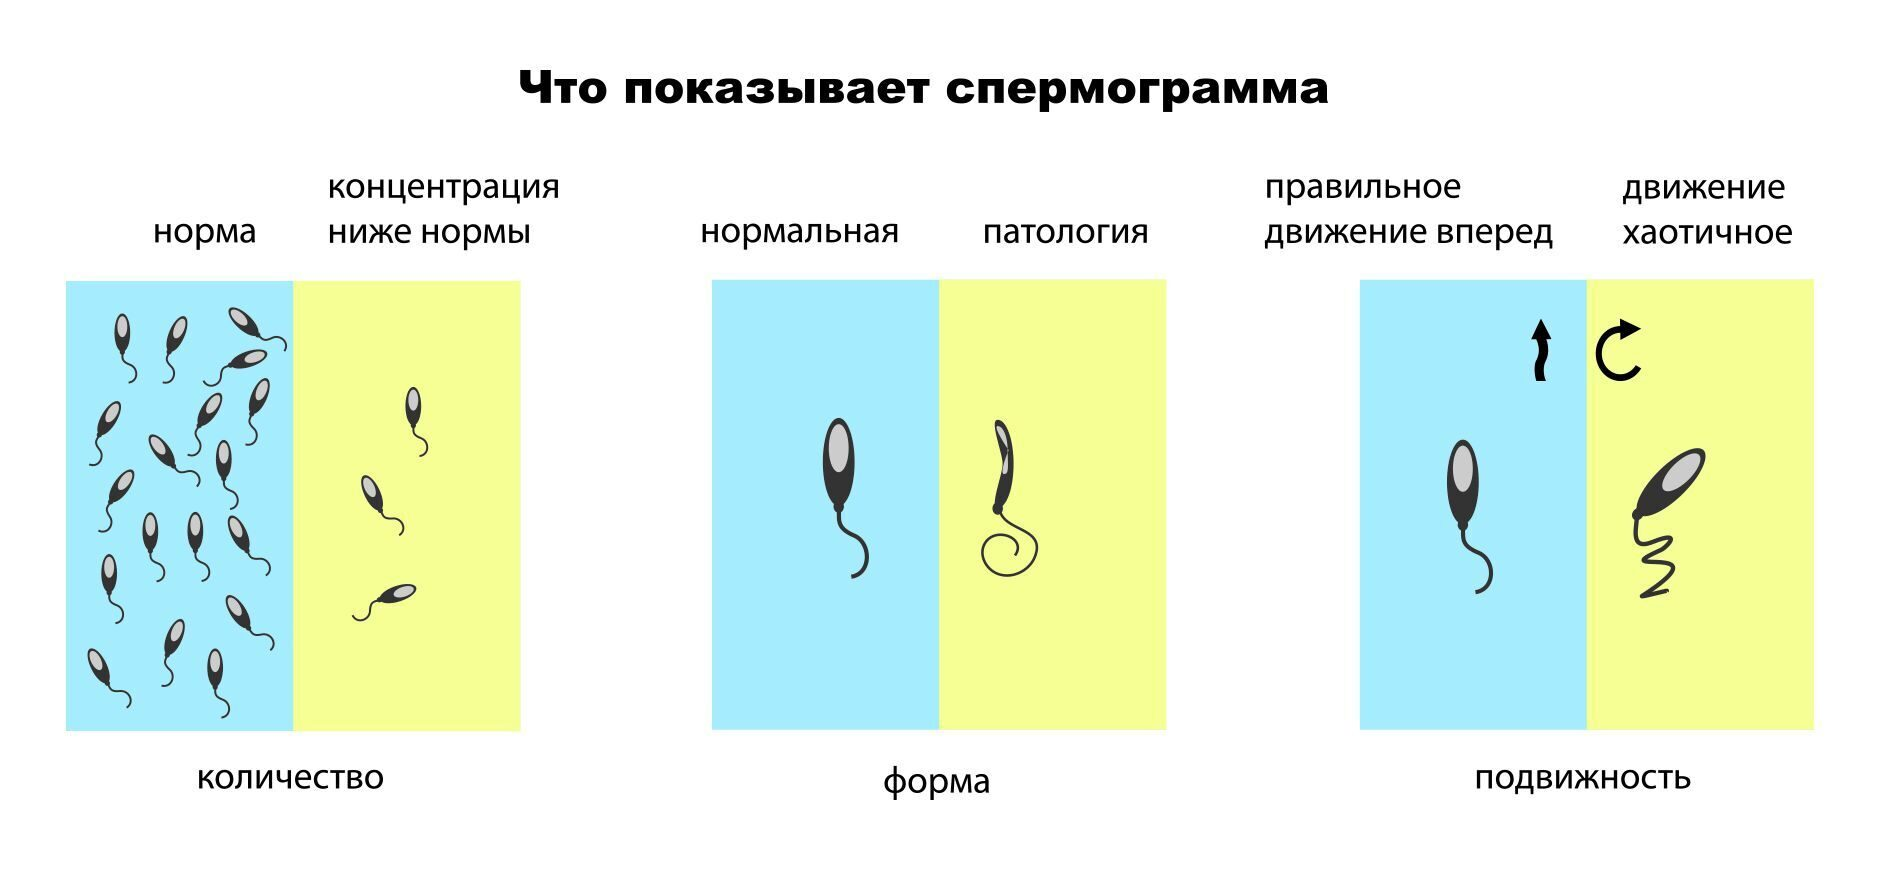 Какой цвет в норме у спермы? - 